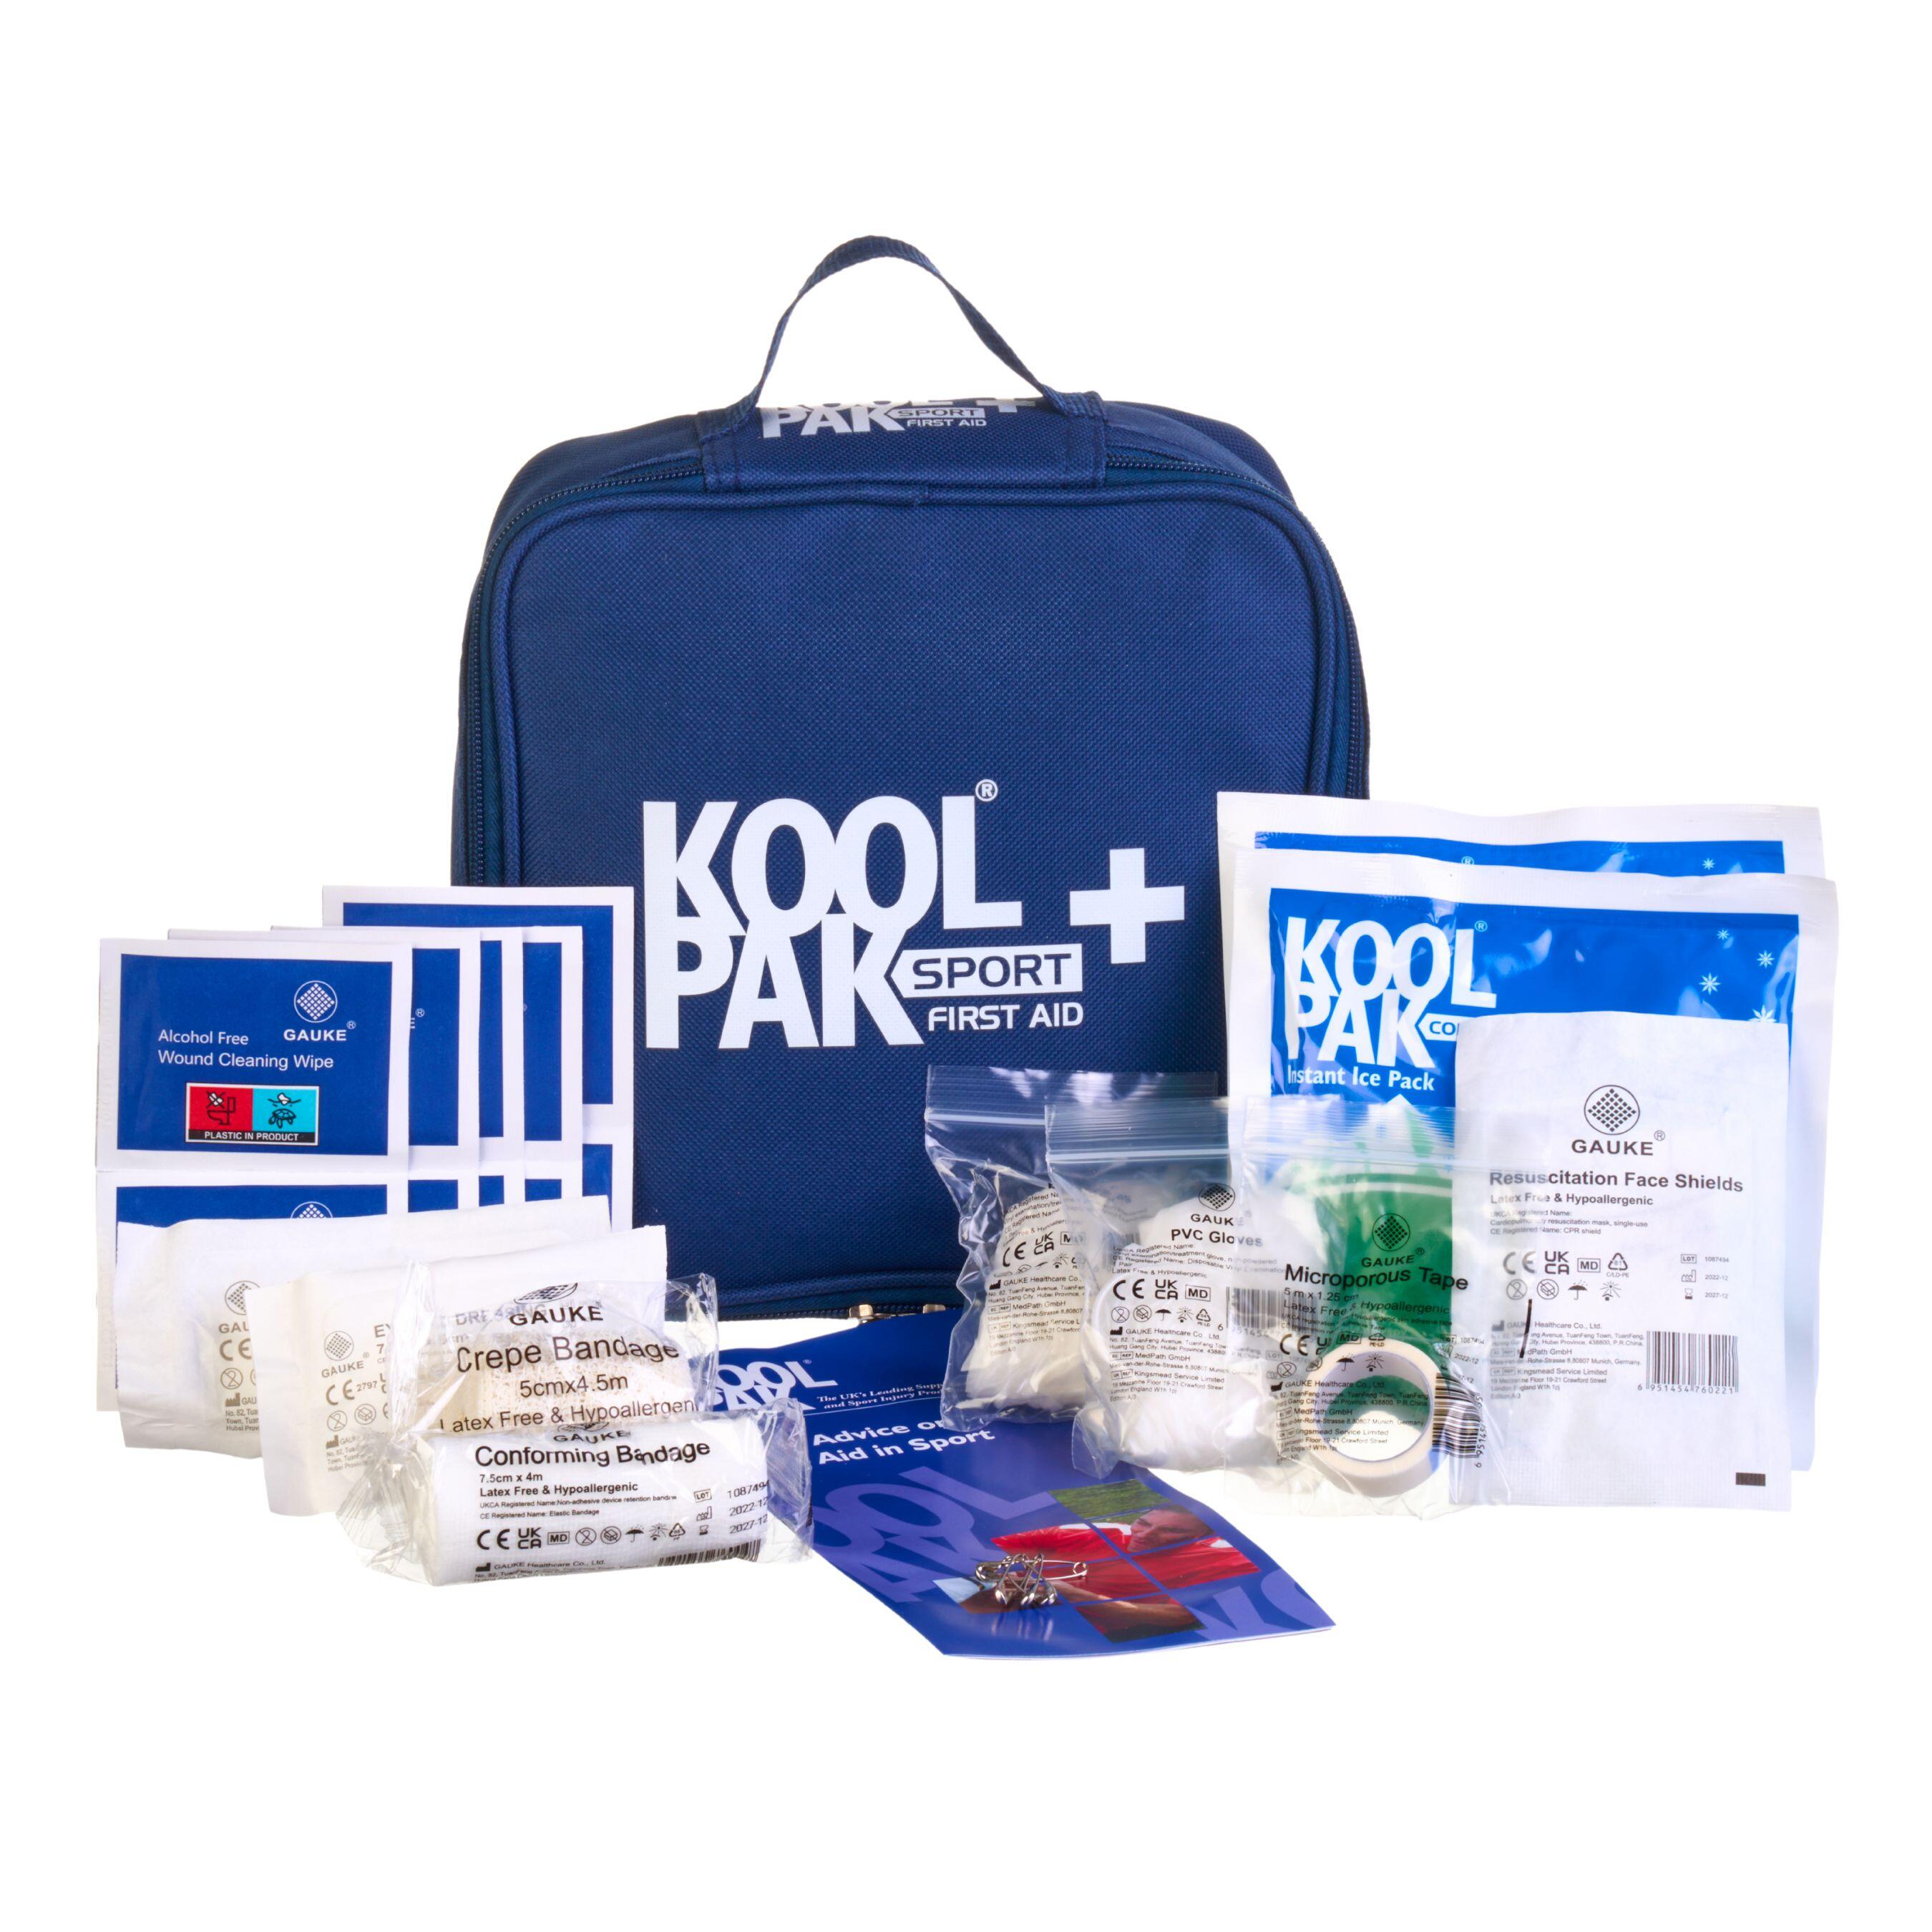 KOOLPAK Koolpak Handy Sports First Aid Kit Injury Treatment